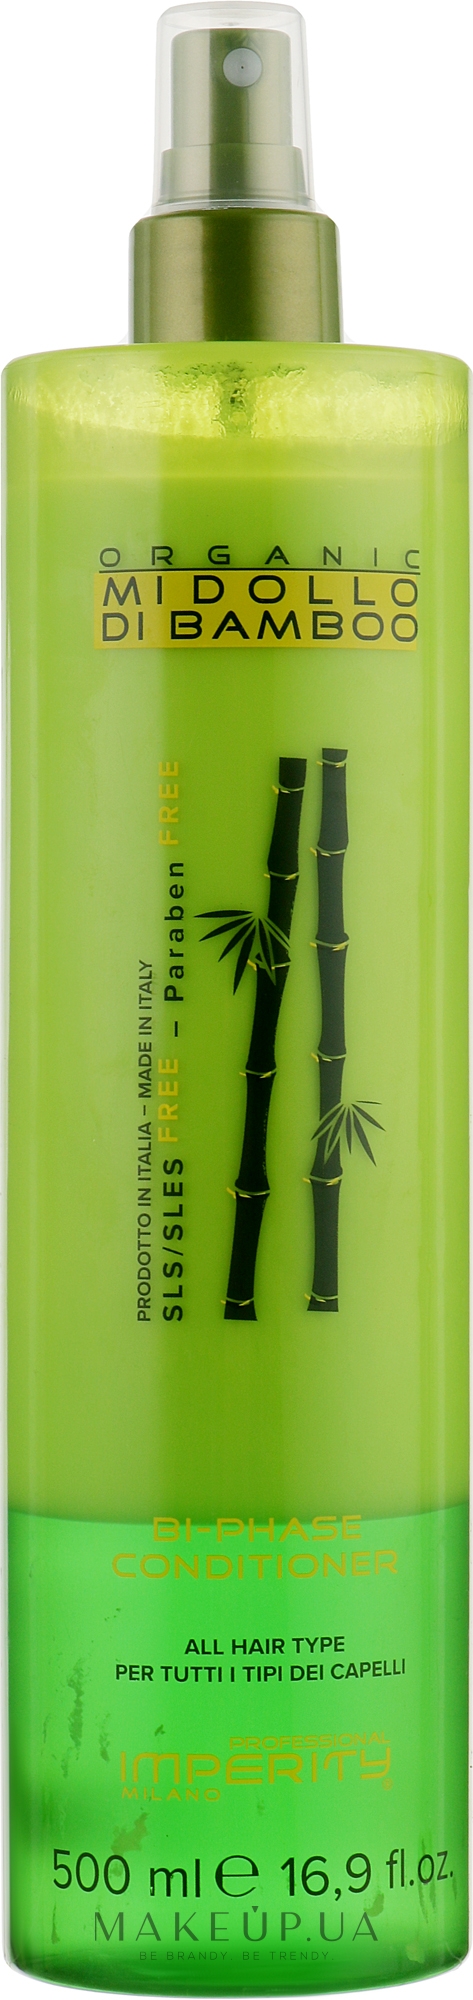 Двофазний кондиціонер-спрей для волосся - Imperity Organic Midollo di Bamboo Bi-Phase Conditioner — фото 500ml